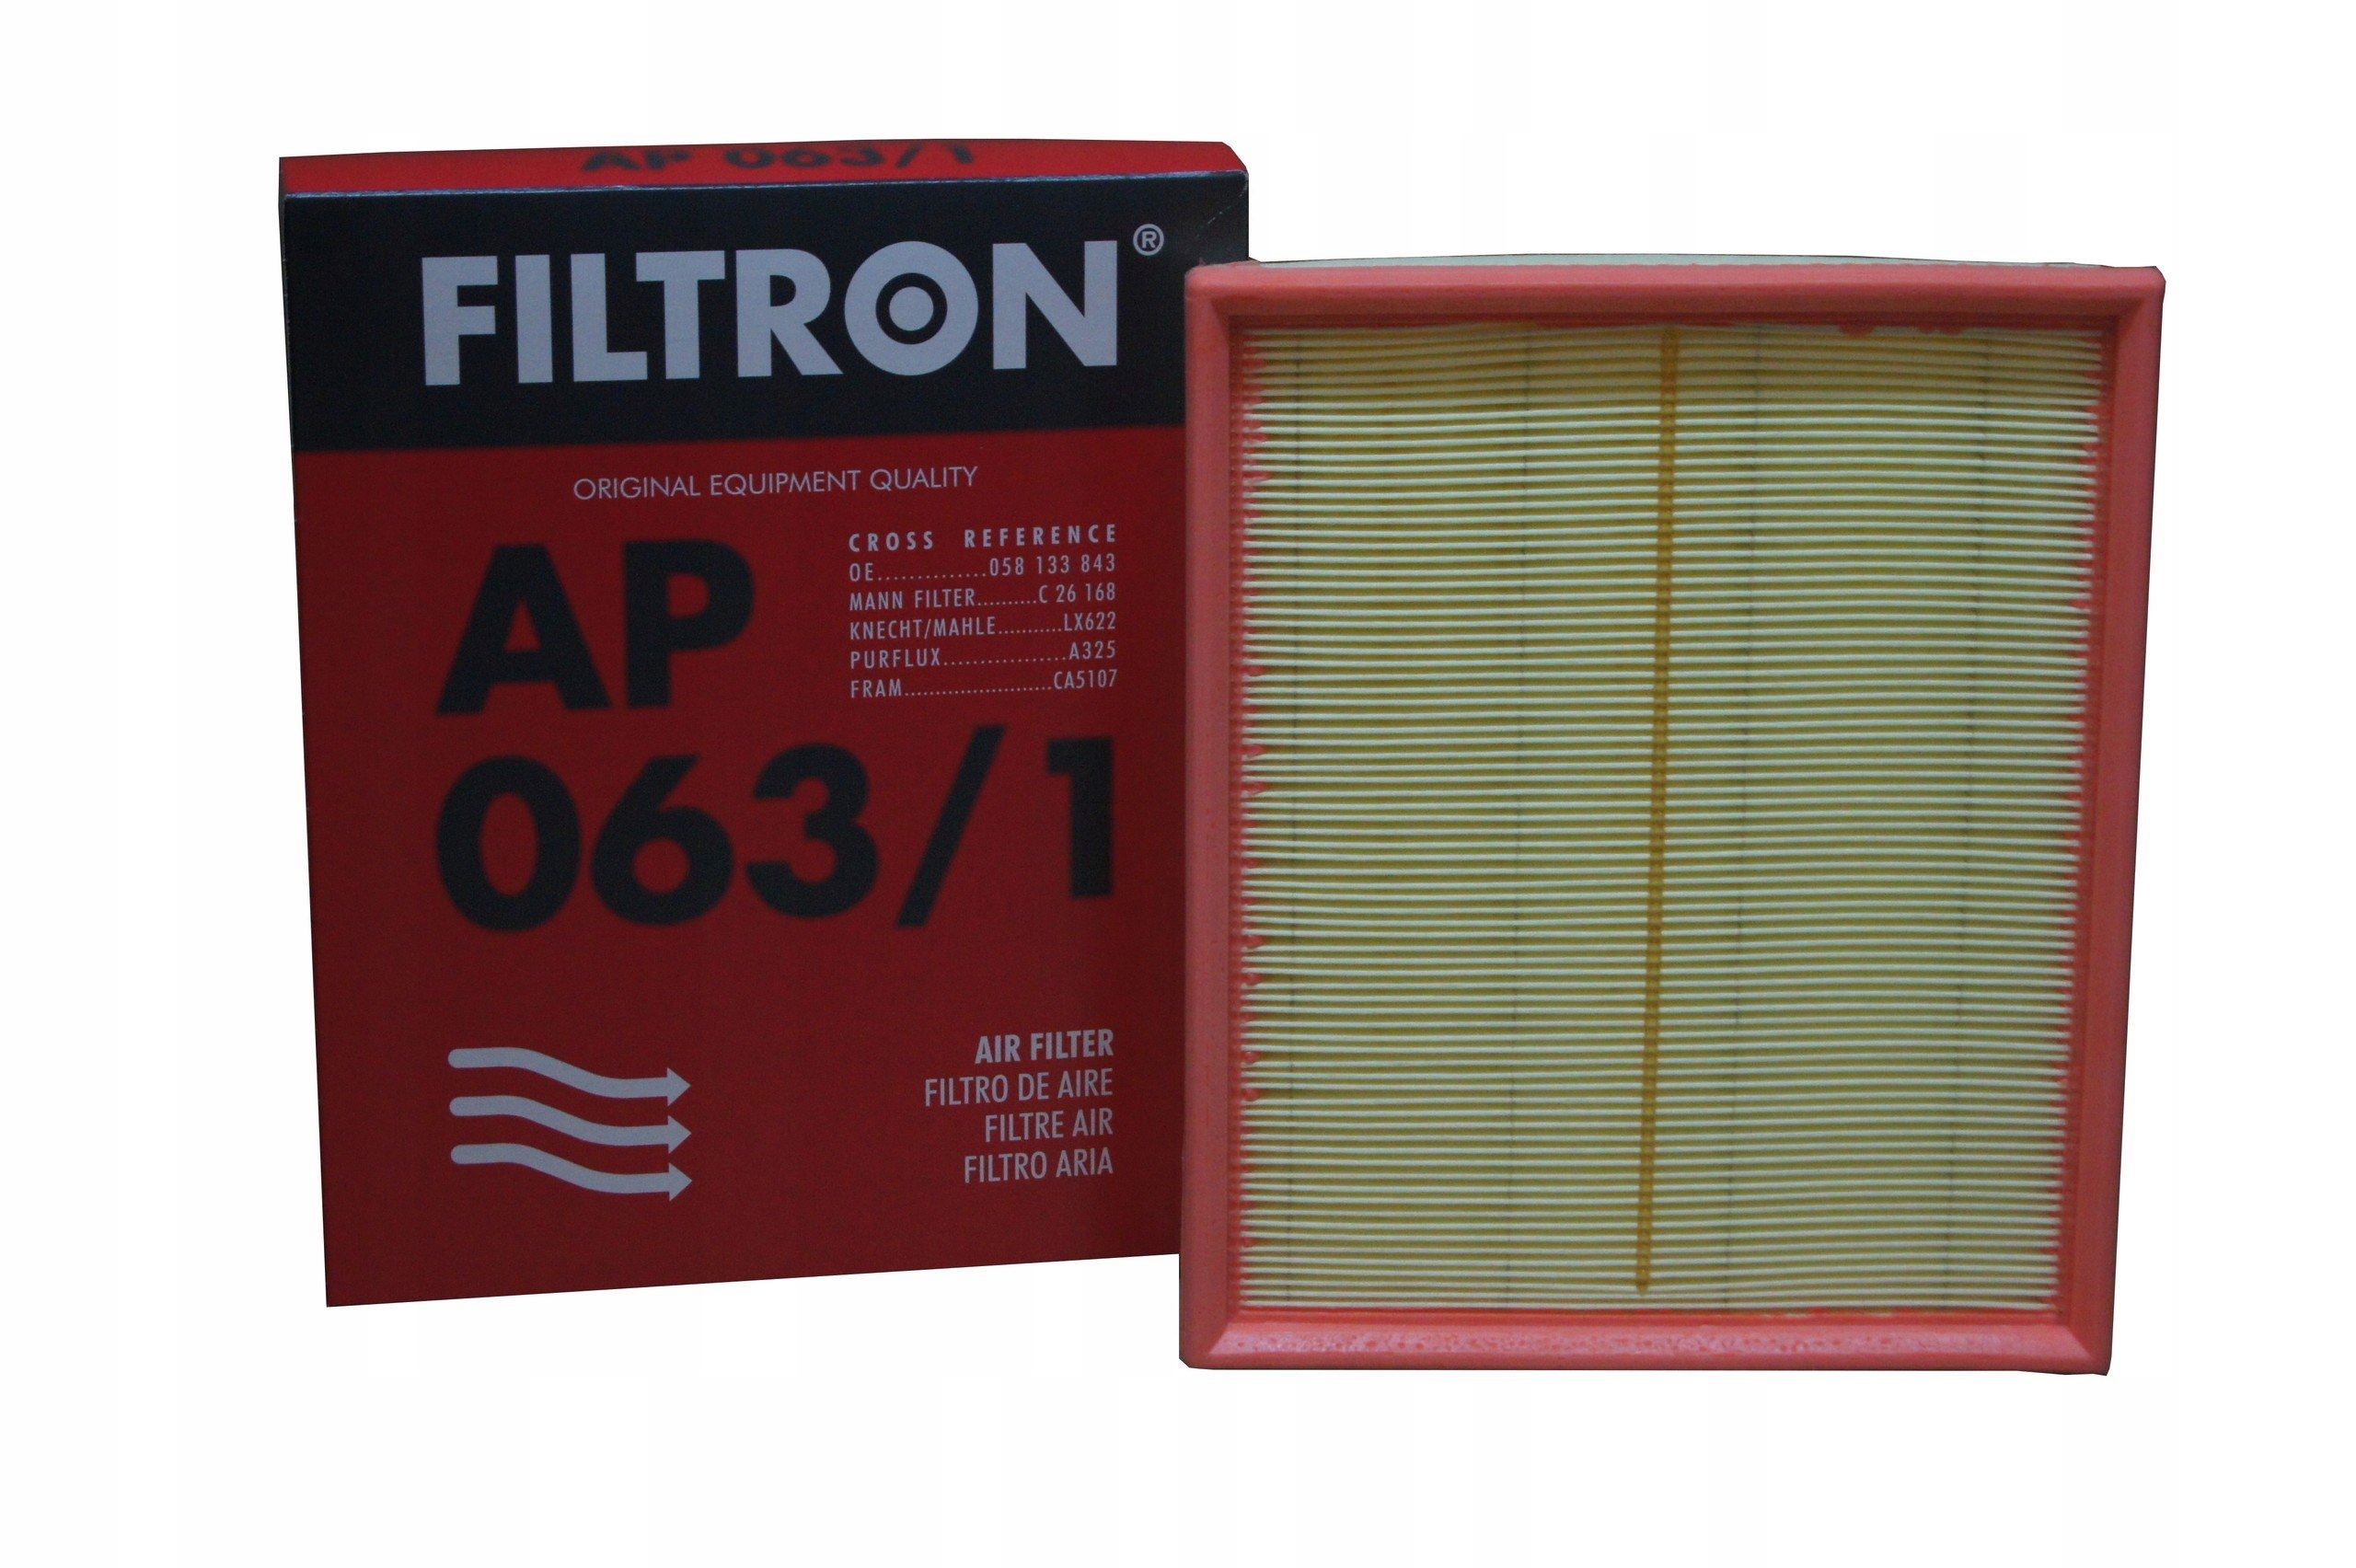 Ap фильтр воздушный. FILTRON ap063 фильтр воздушный. Ap063/1 FILTRON. Фильтр воздушный FILTRON ap026/4. Cc6461km29 воздушный фильтр Фильтрон.